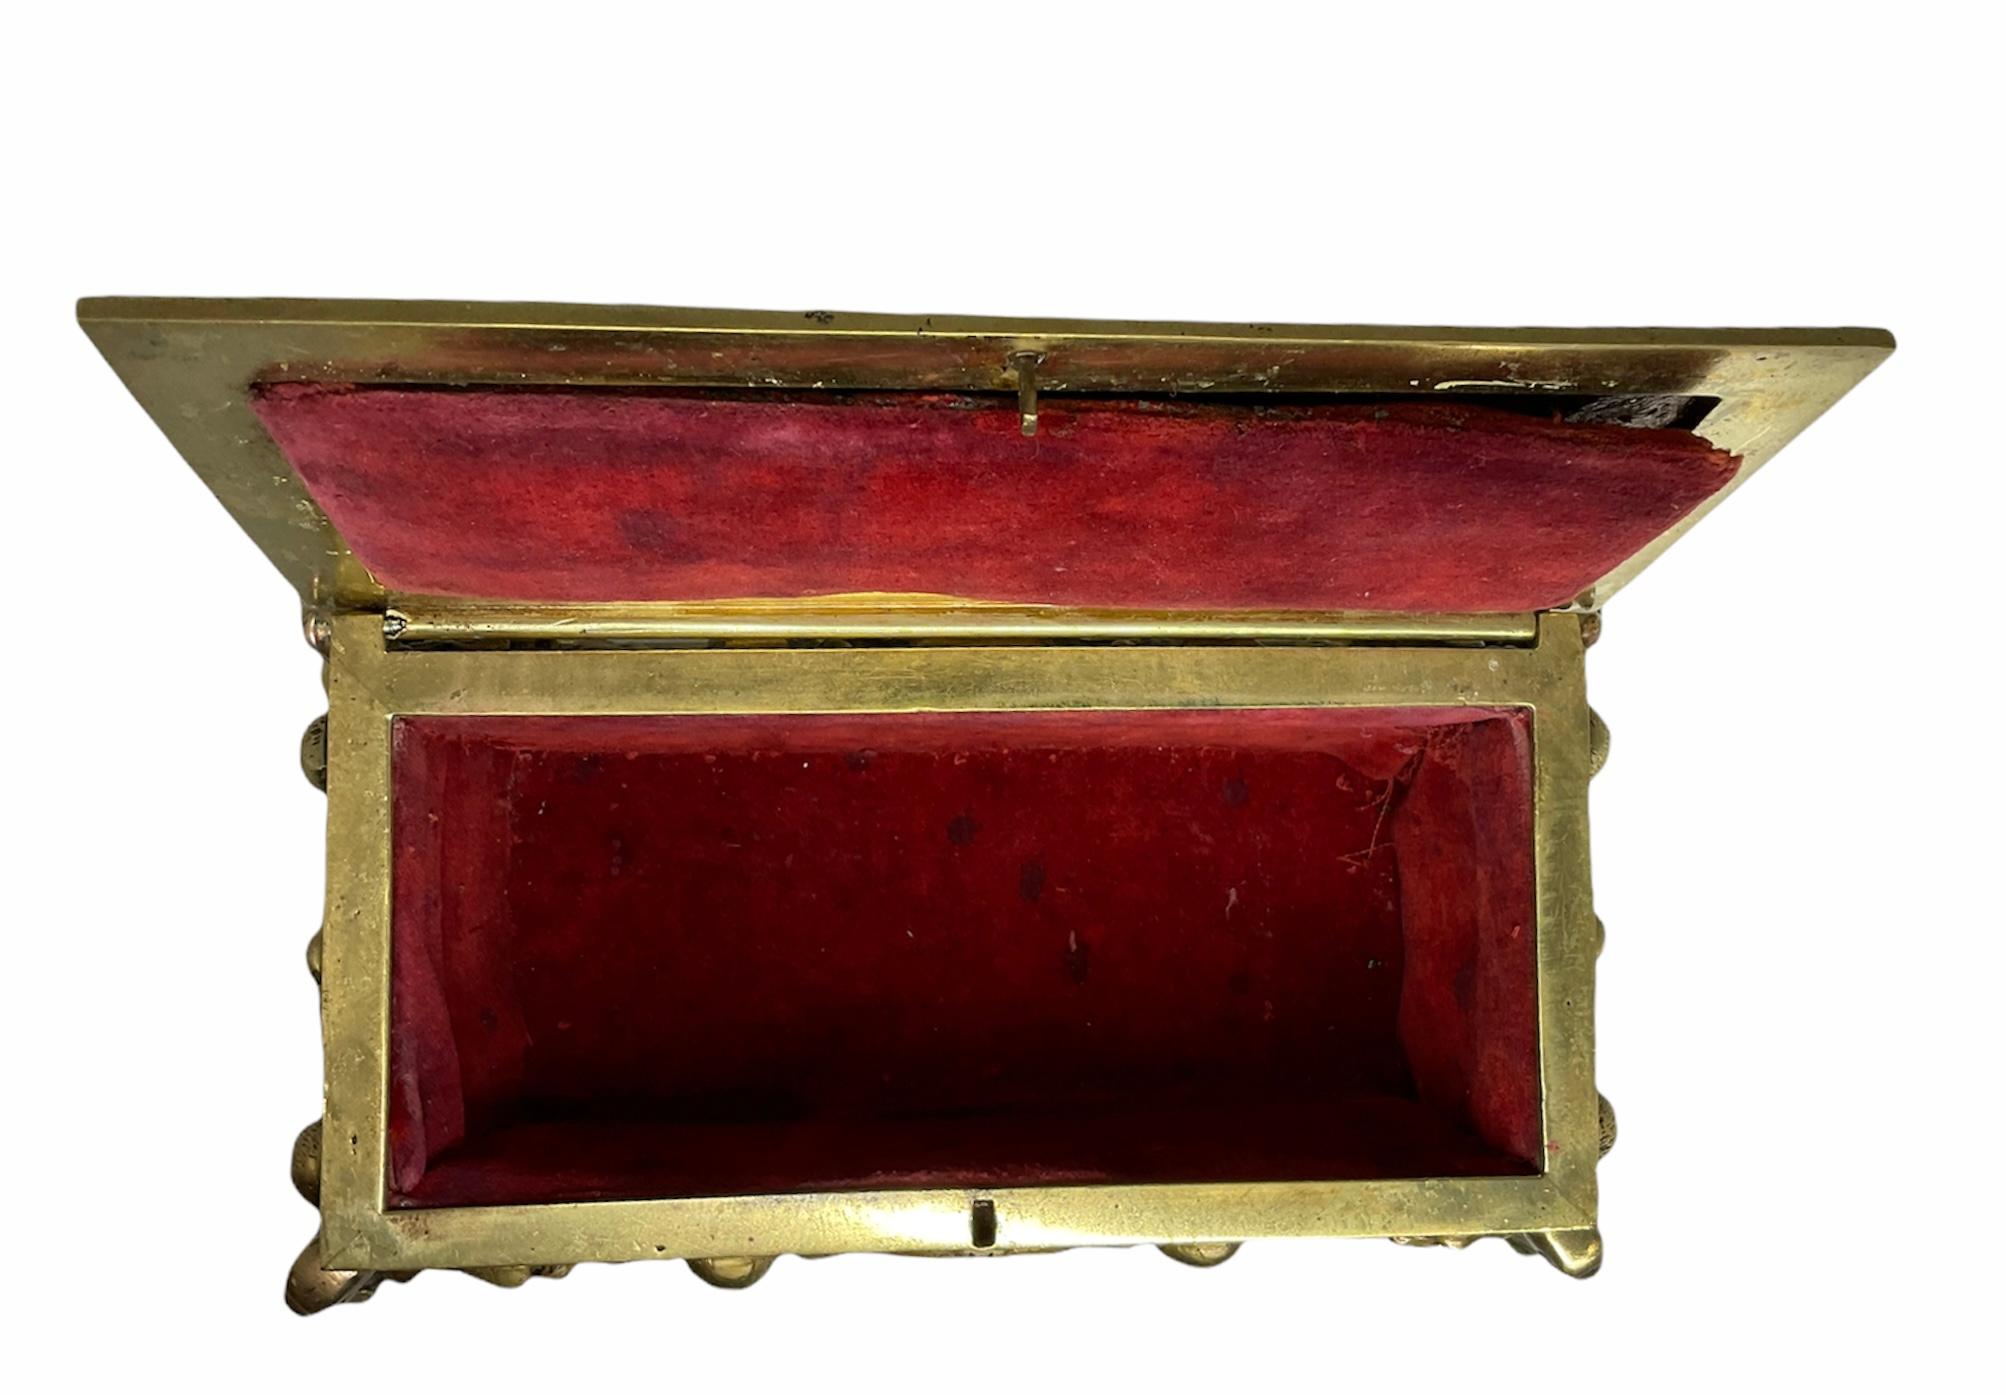 Dies ist eine vergoldete Bronze repousse rechteckigen Schmuck / dekorative Box. Oben auf dem Deckel ist eine Szene zu sehen, in der Don Quijote auf seinem Pferd reitet und gleichzeitig einige Schafe neben ihm herlaufen. Auf der Vorder- und Rückseite